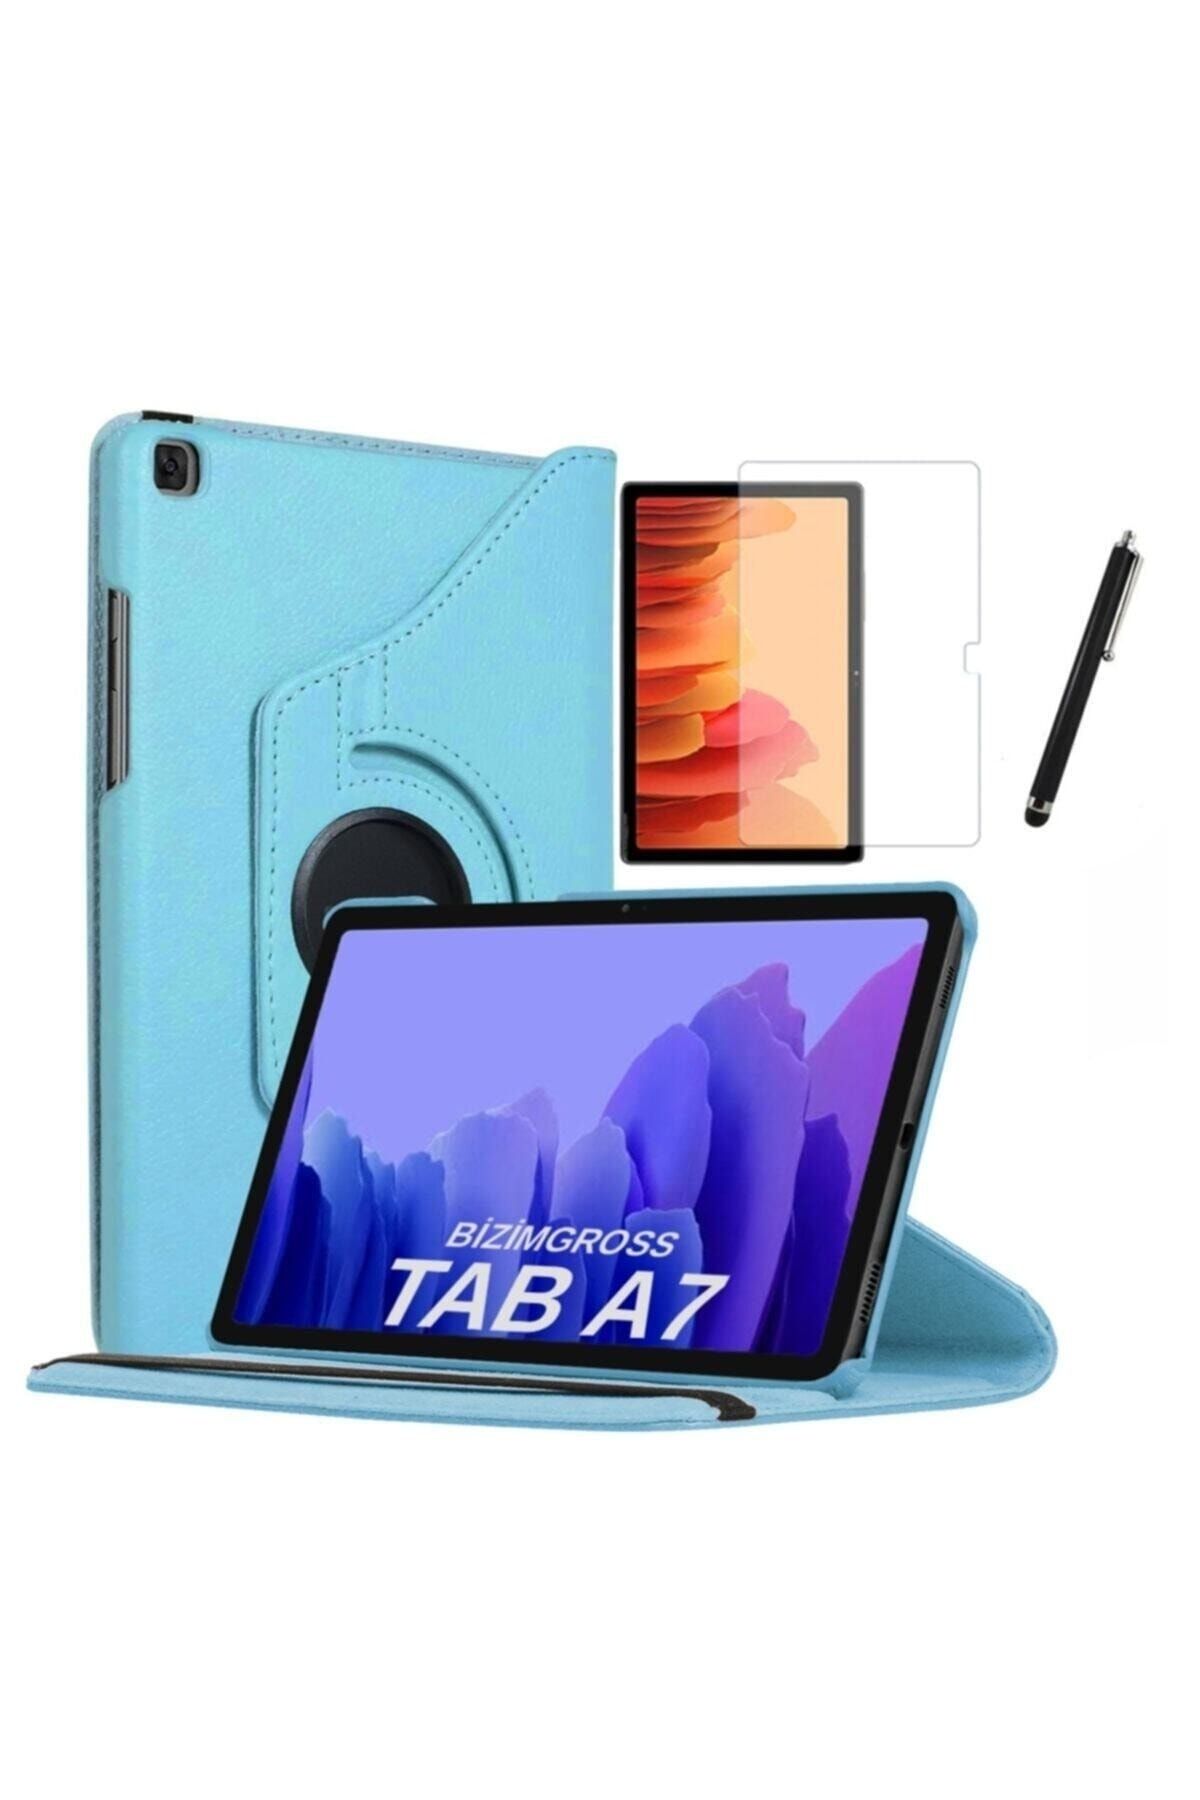 BizimGross Galaxy Tab A7 Sm T500 T505 T507 Uyumlu  Dönebilen Tablet Kılıfı + Ekran Koruyucu + Kalem 10.4 Inç